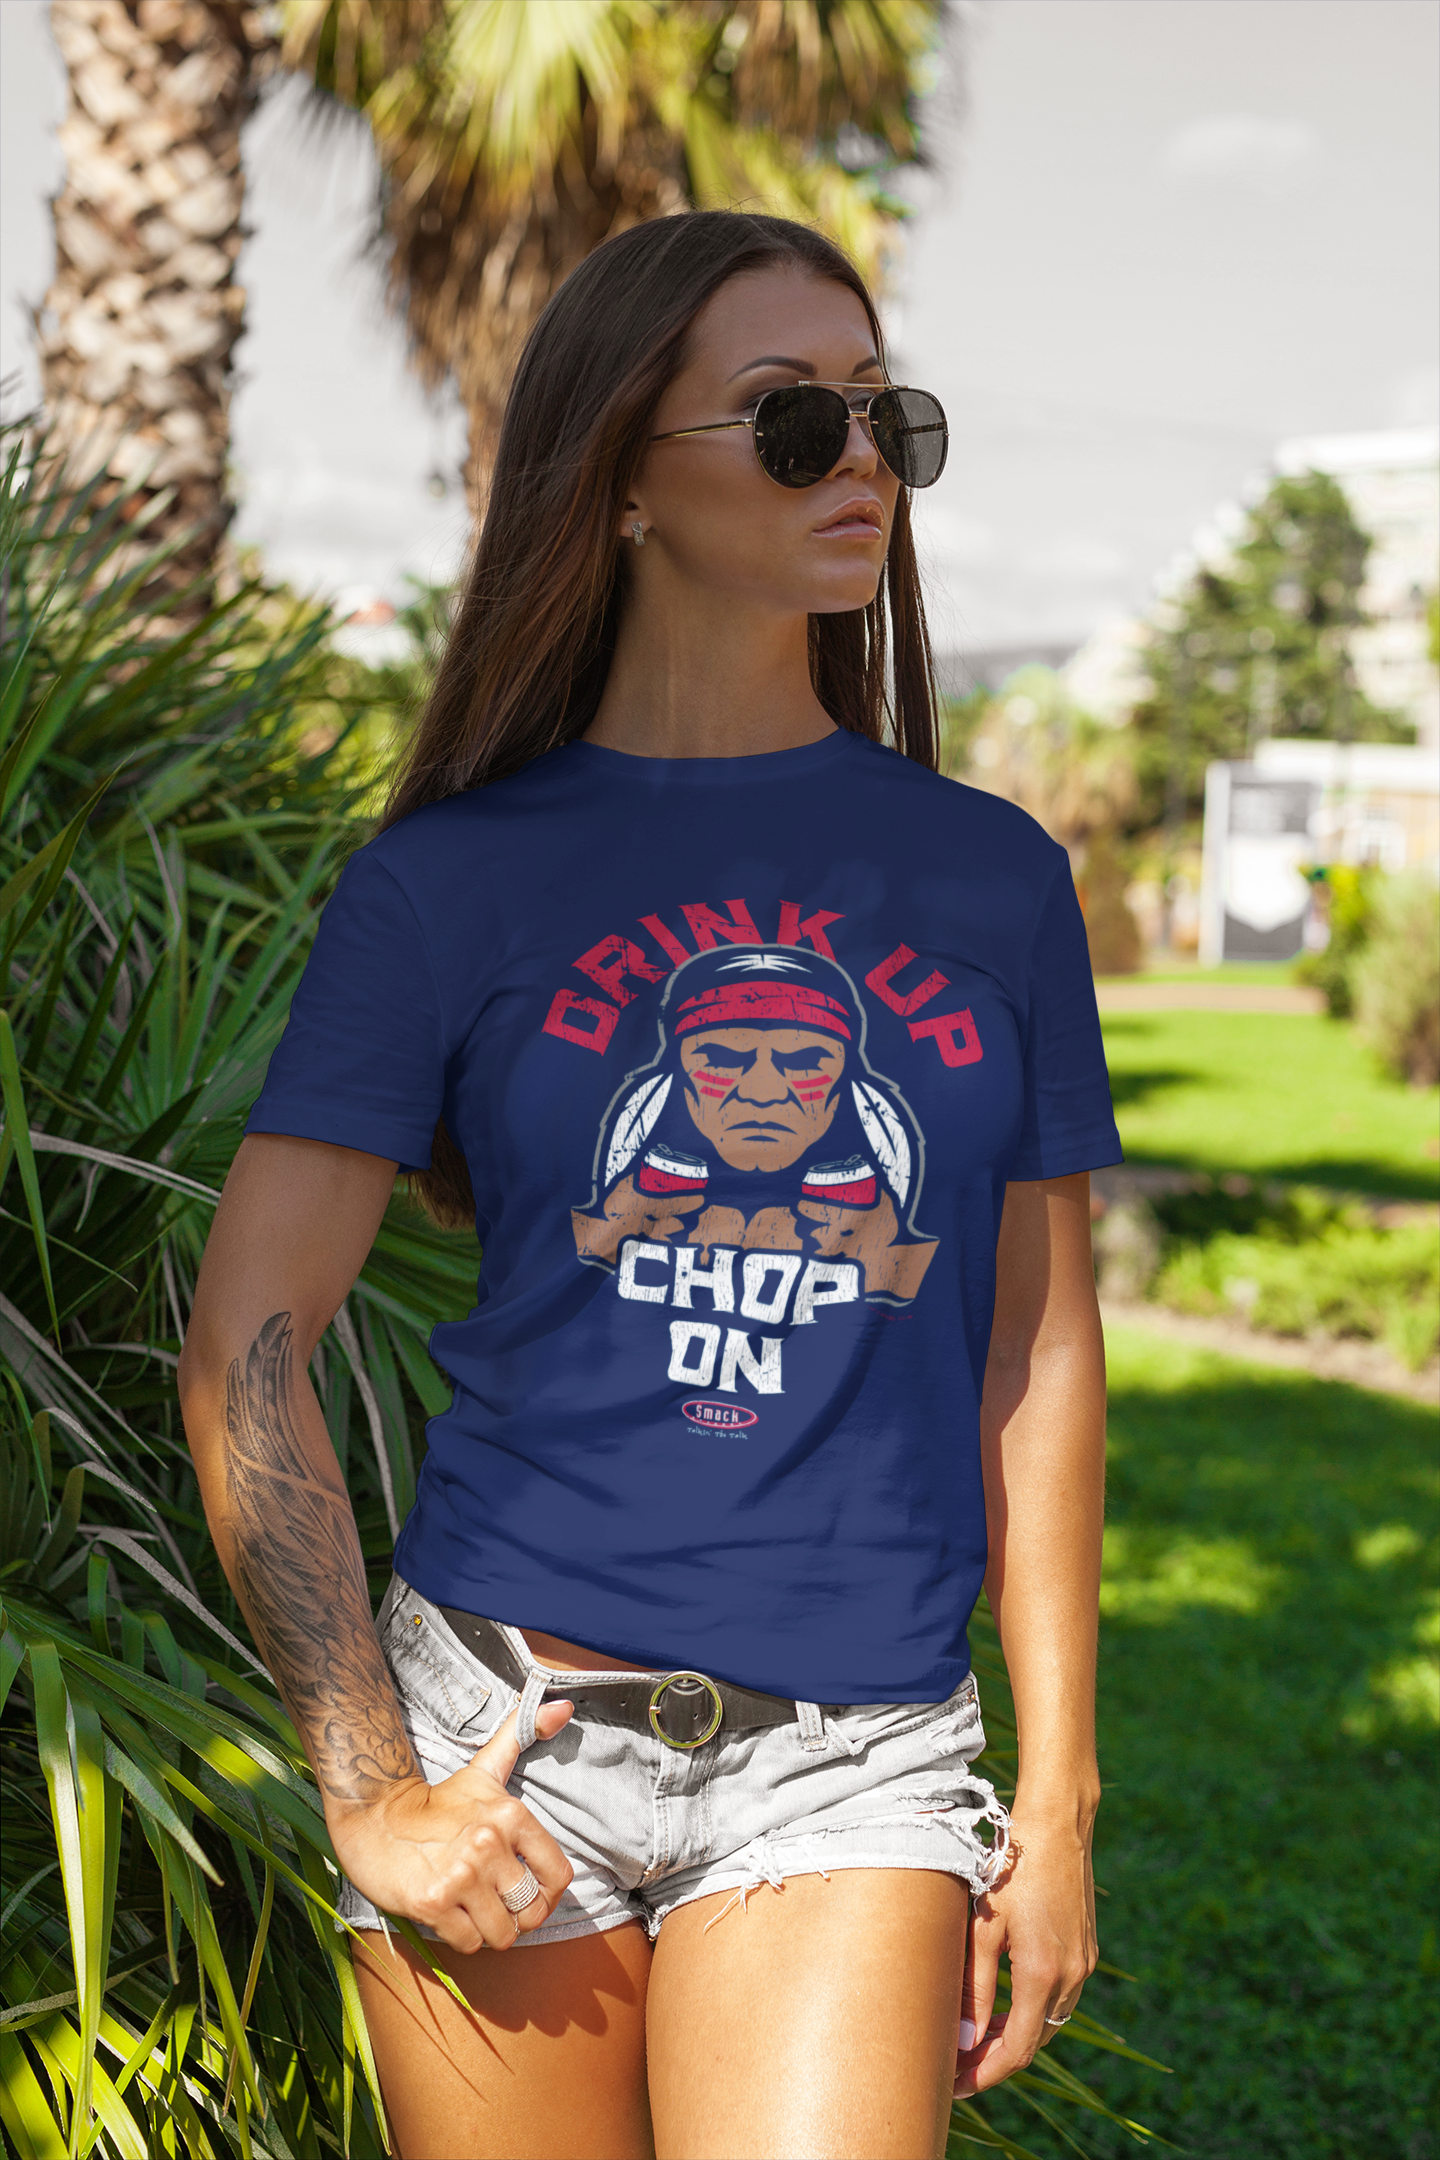 Atlanta Baseball Fans - Drink Up Chop on Shirt Medium / Navy